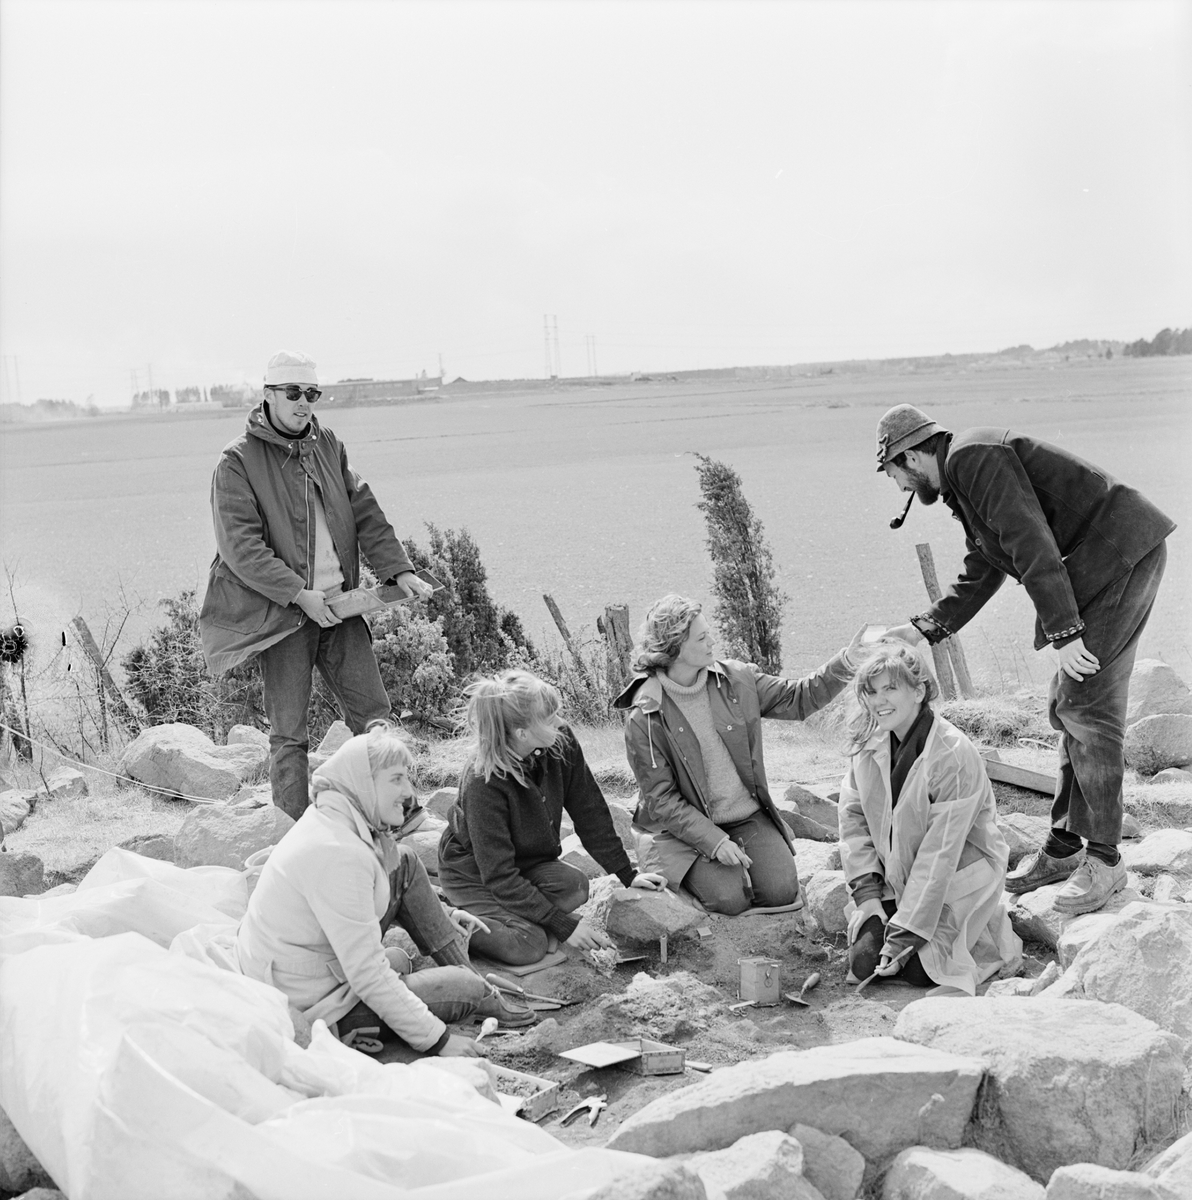 Arkeologisk utgrävning, svärd av järn i vikingagrav, gravfältet Ytterbacken, Vaksala socken, Uppland, maj 1965